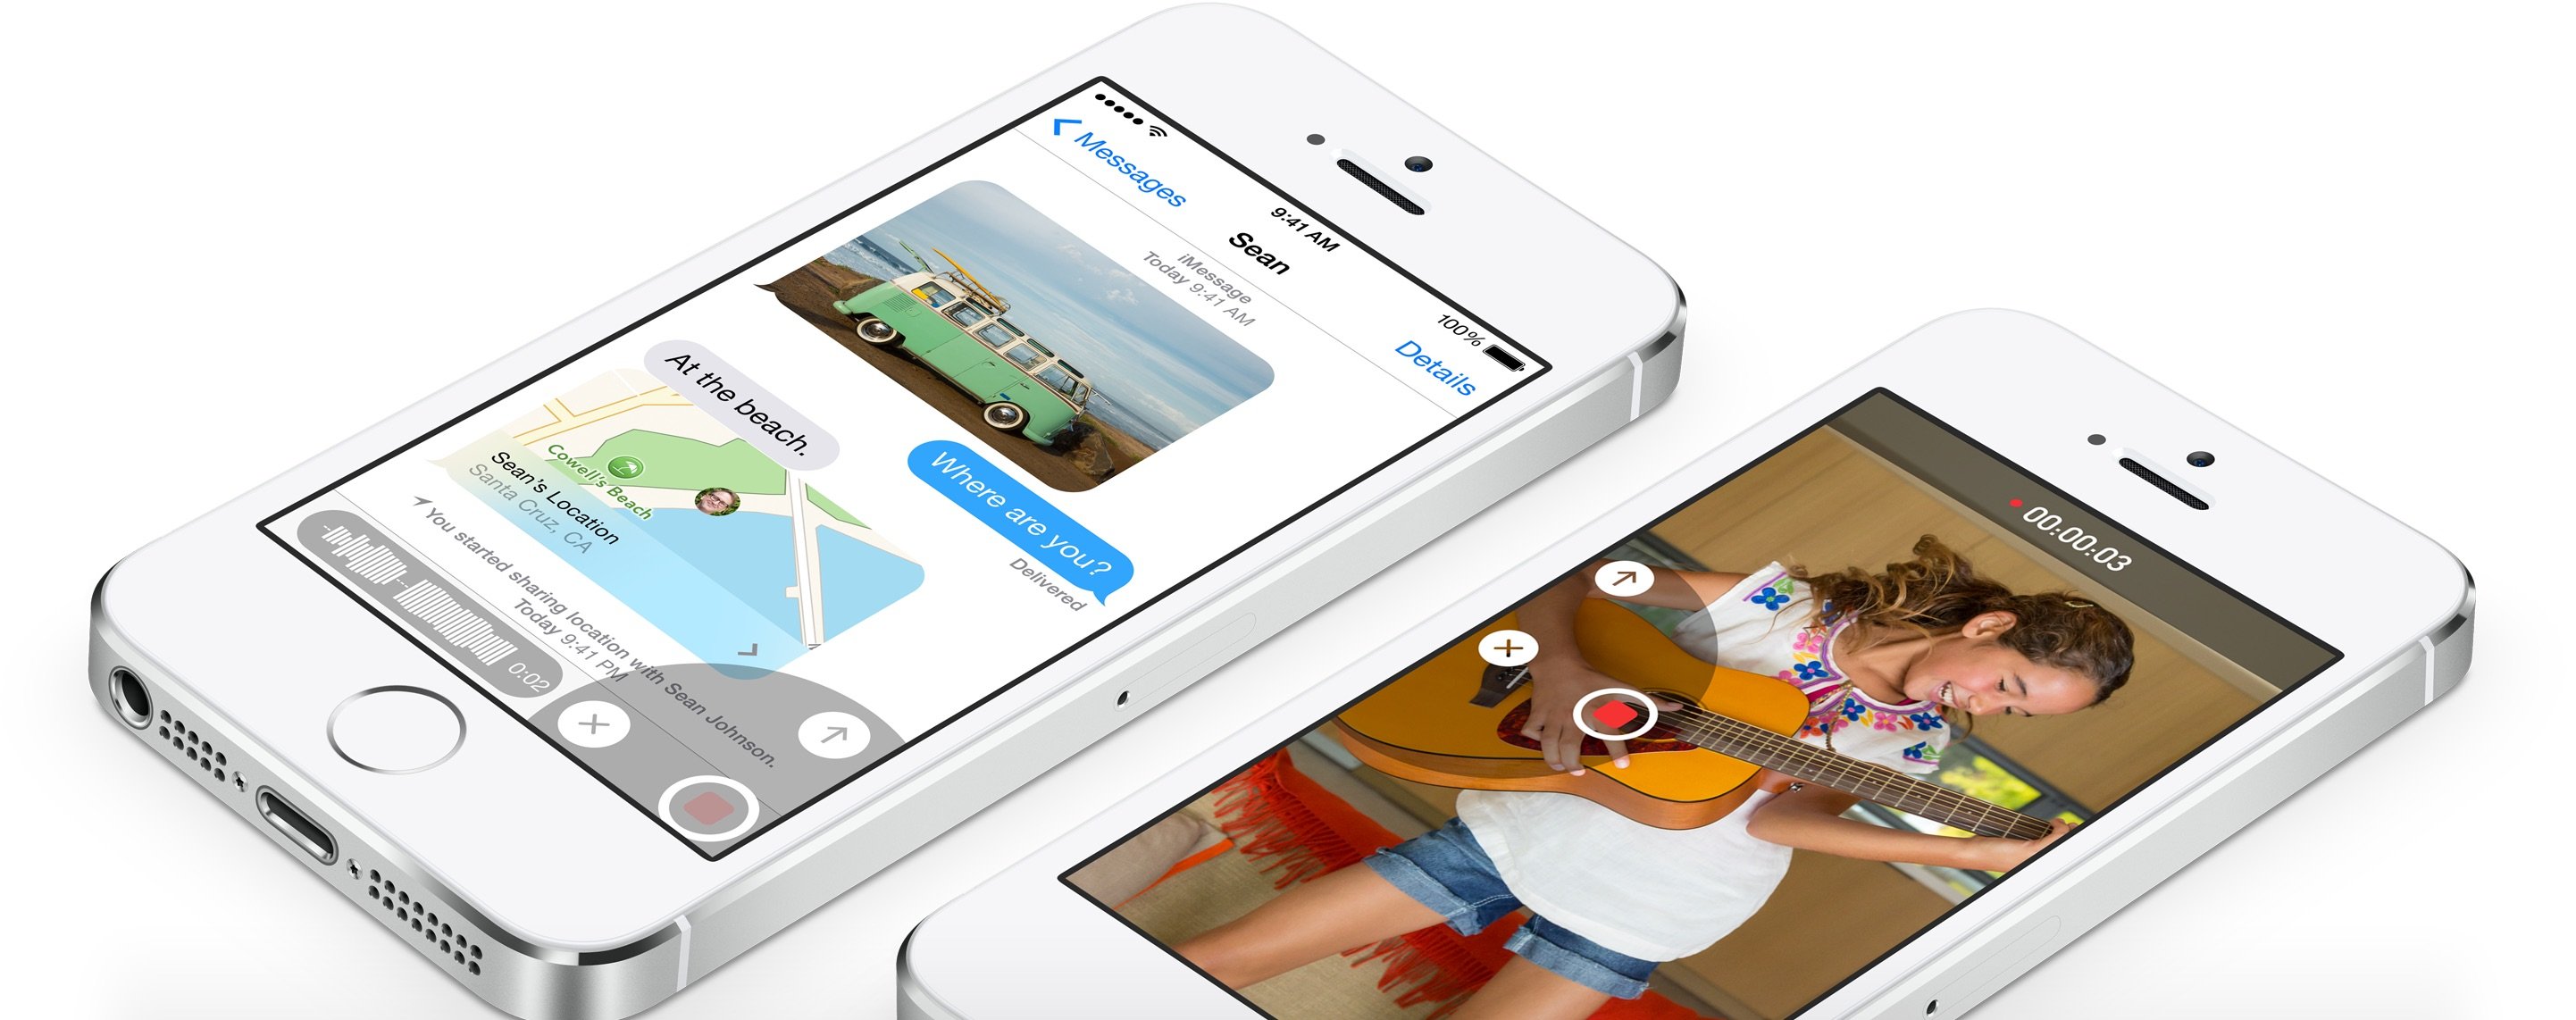 Apple announced many new iOS 8 features already.